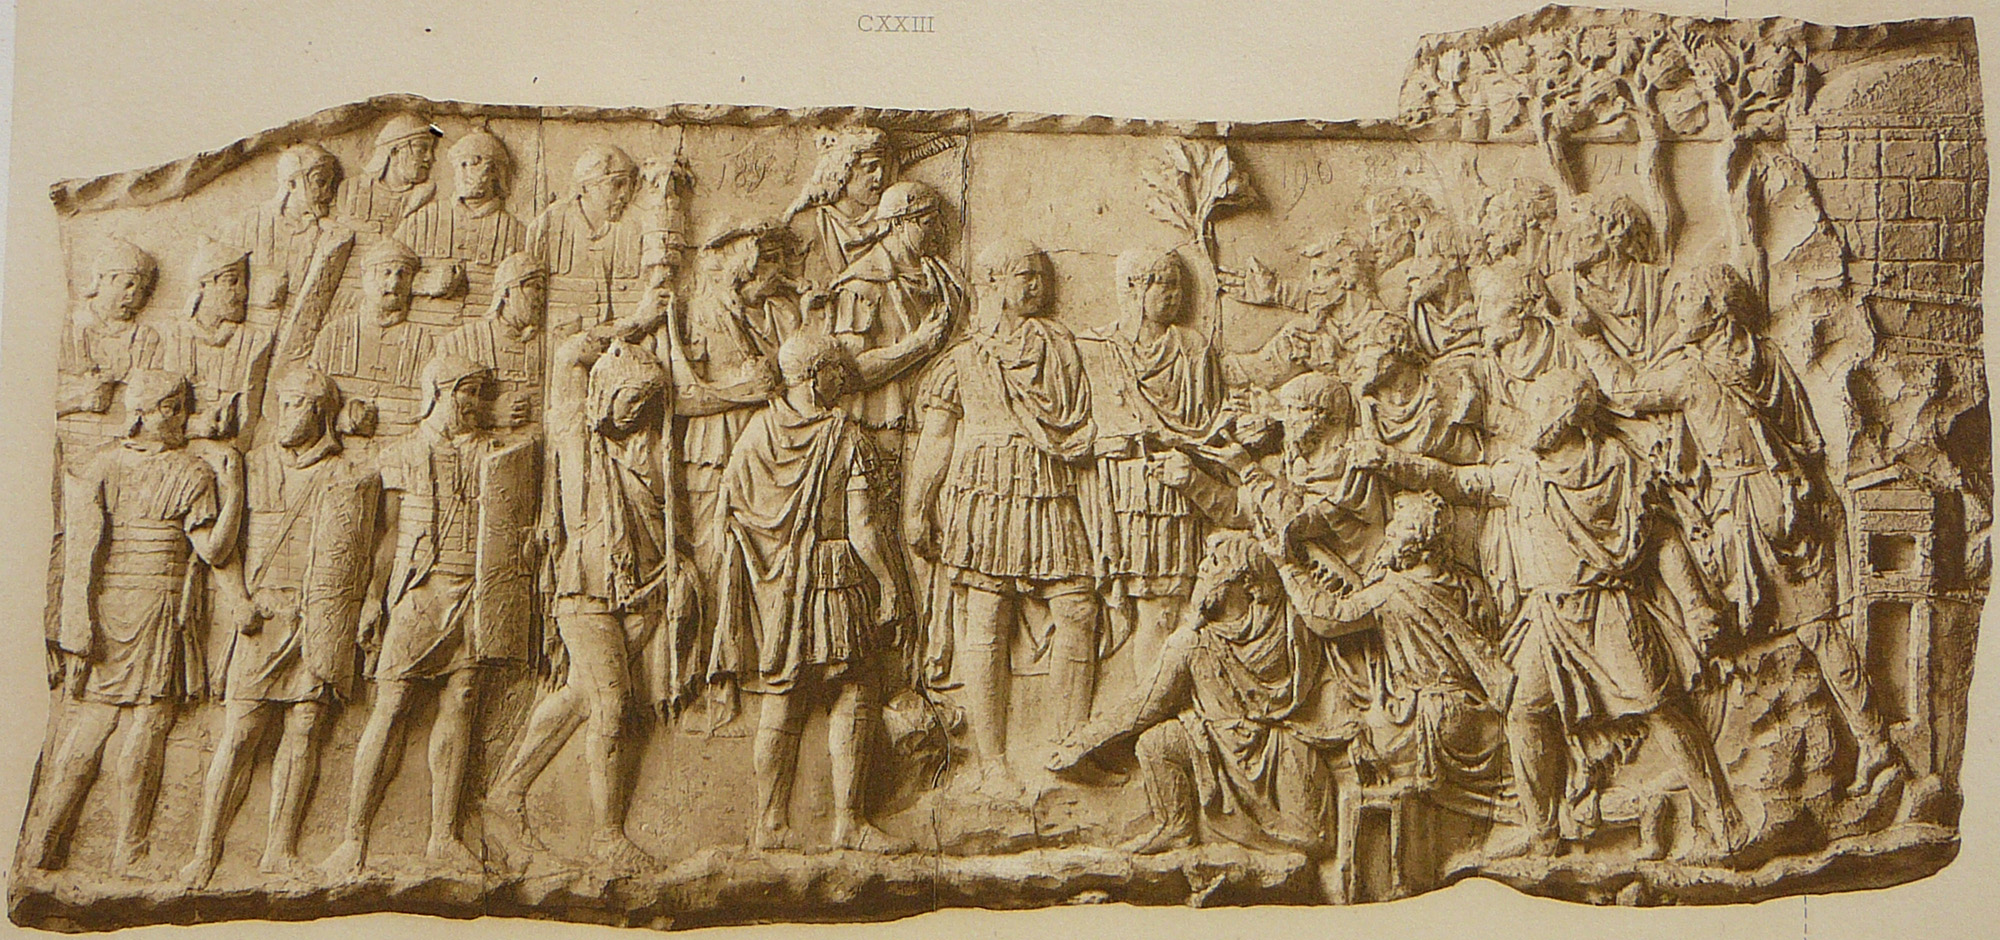 Conrad Cichorius, Die Reliefs der Traianssäule